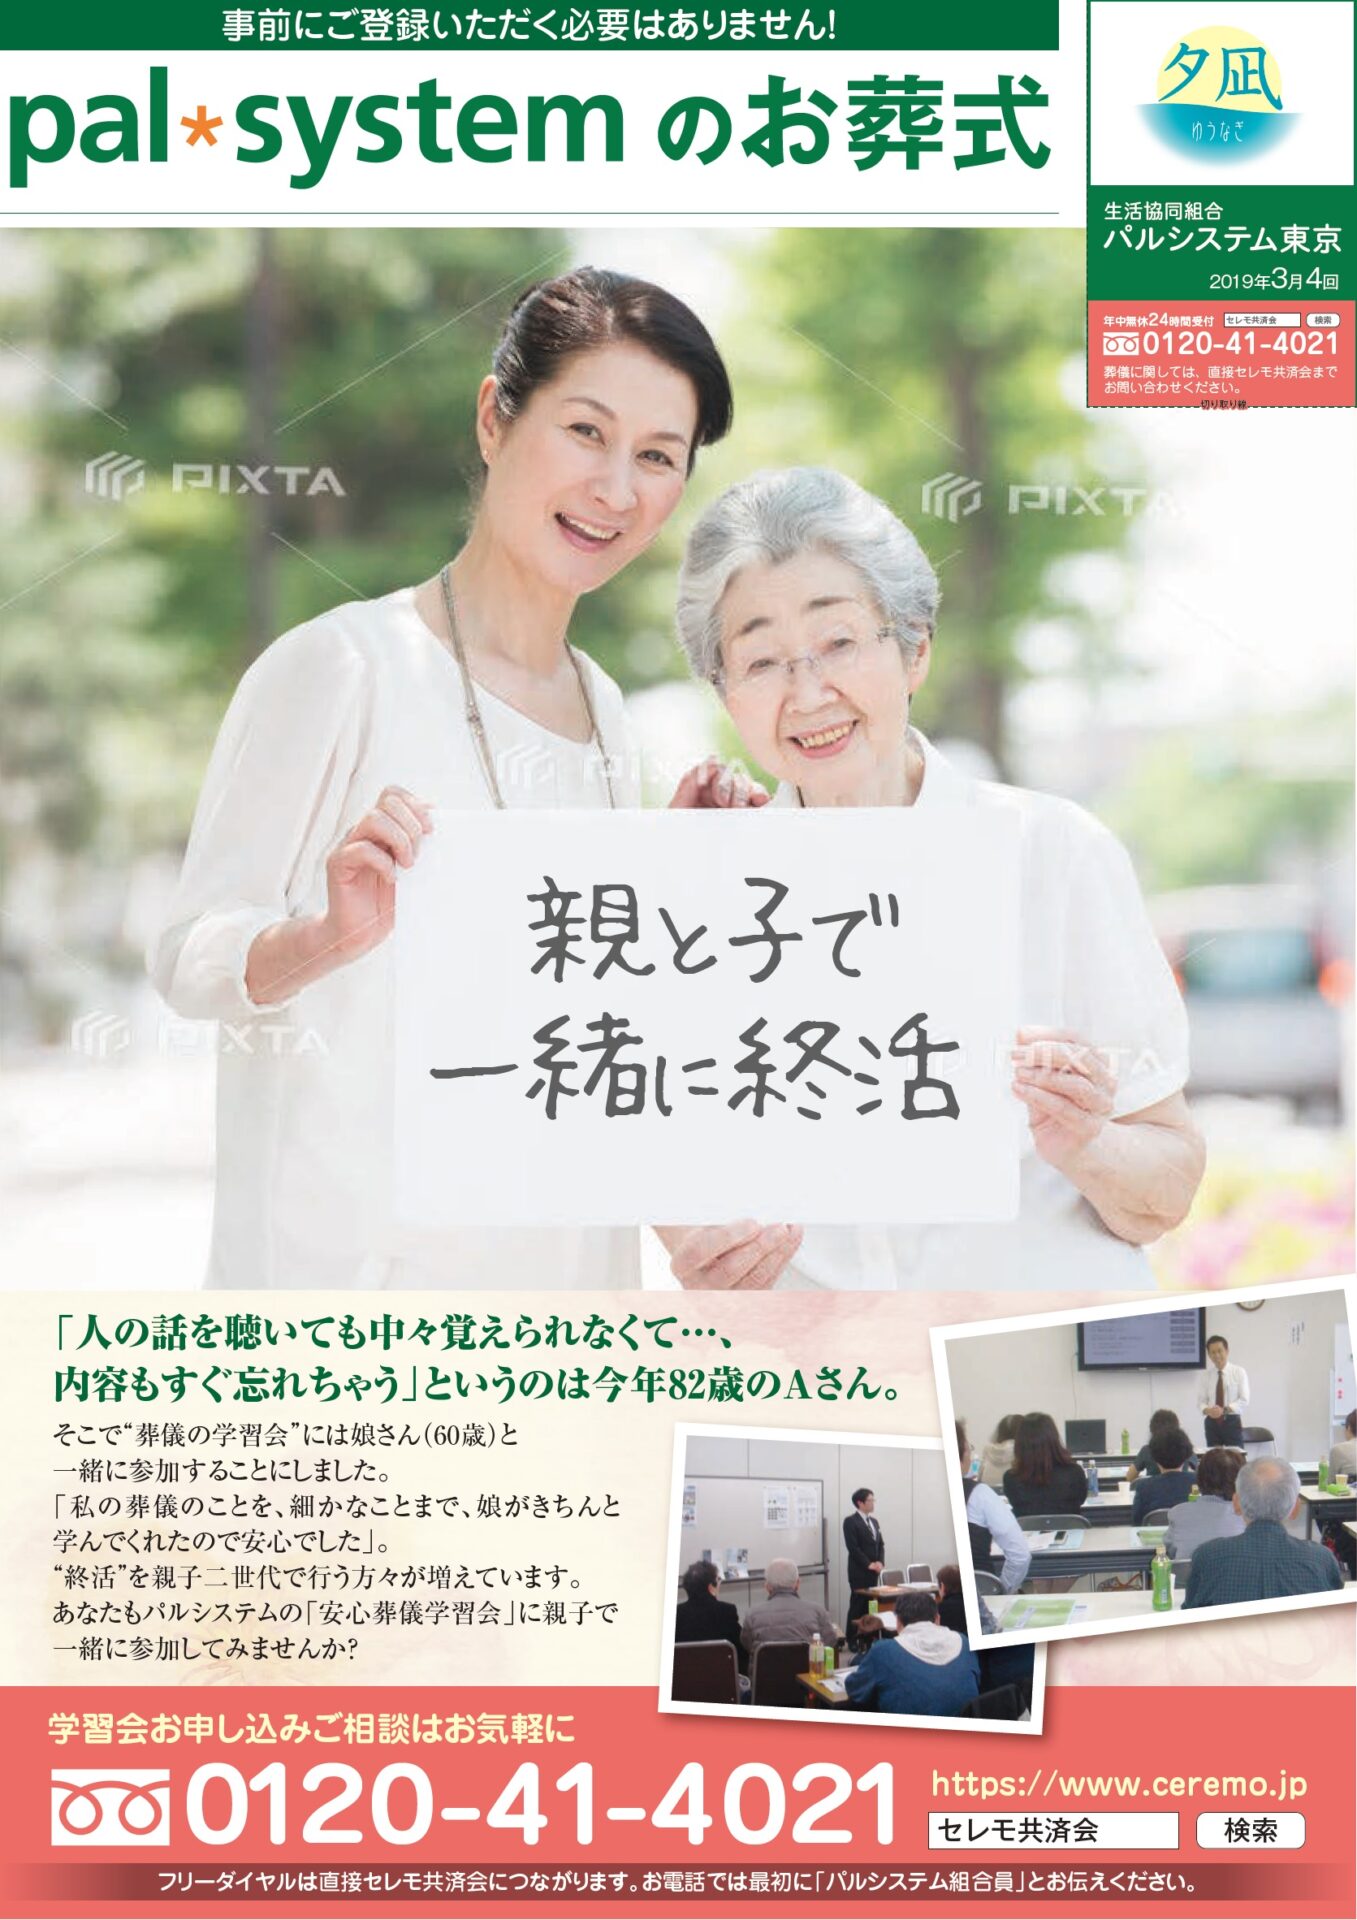 生活協同組合パルシテム東京 palsystemのお葬式 夕凪葬 葬儀チラシ 2019年3月企画